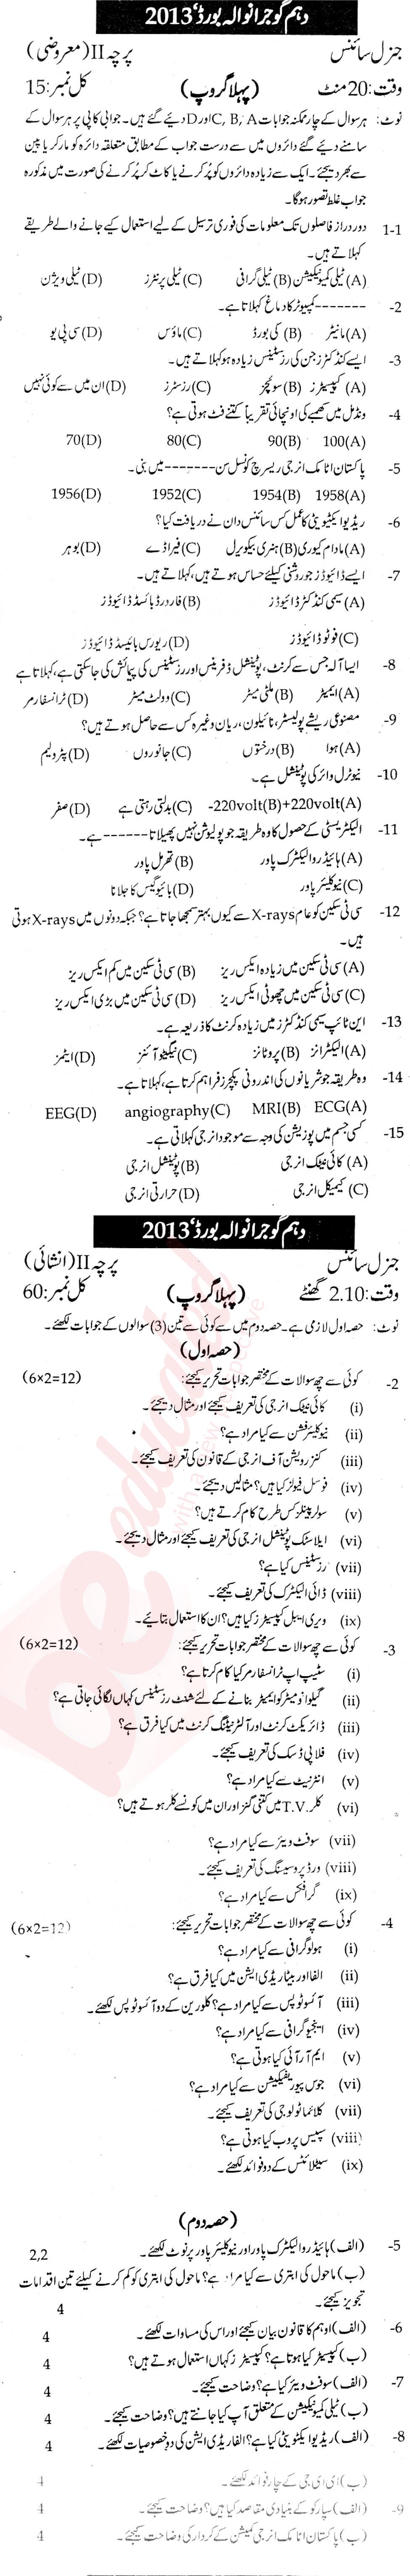 General Science 10th Urdu Medium Past Paper Group 1 BISE Gujranwala 2013